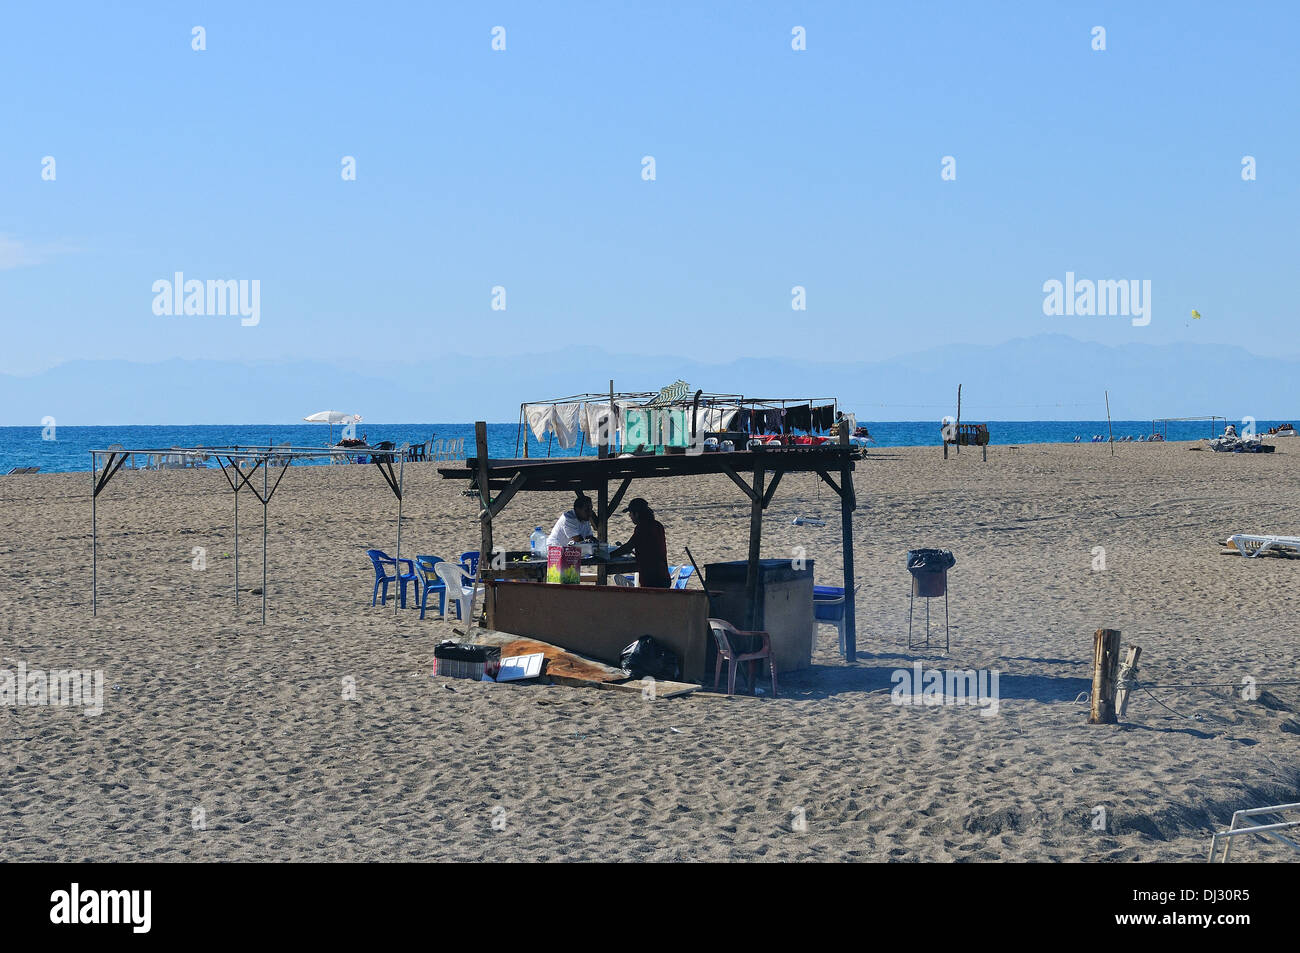 Presso il bar in spiaggia Foto Stock